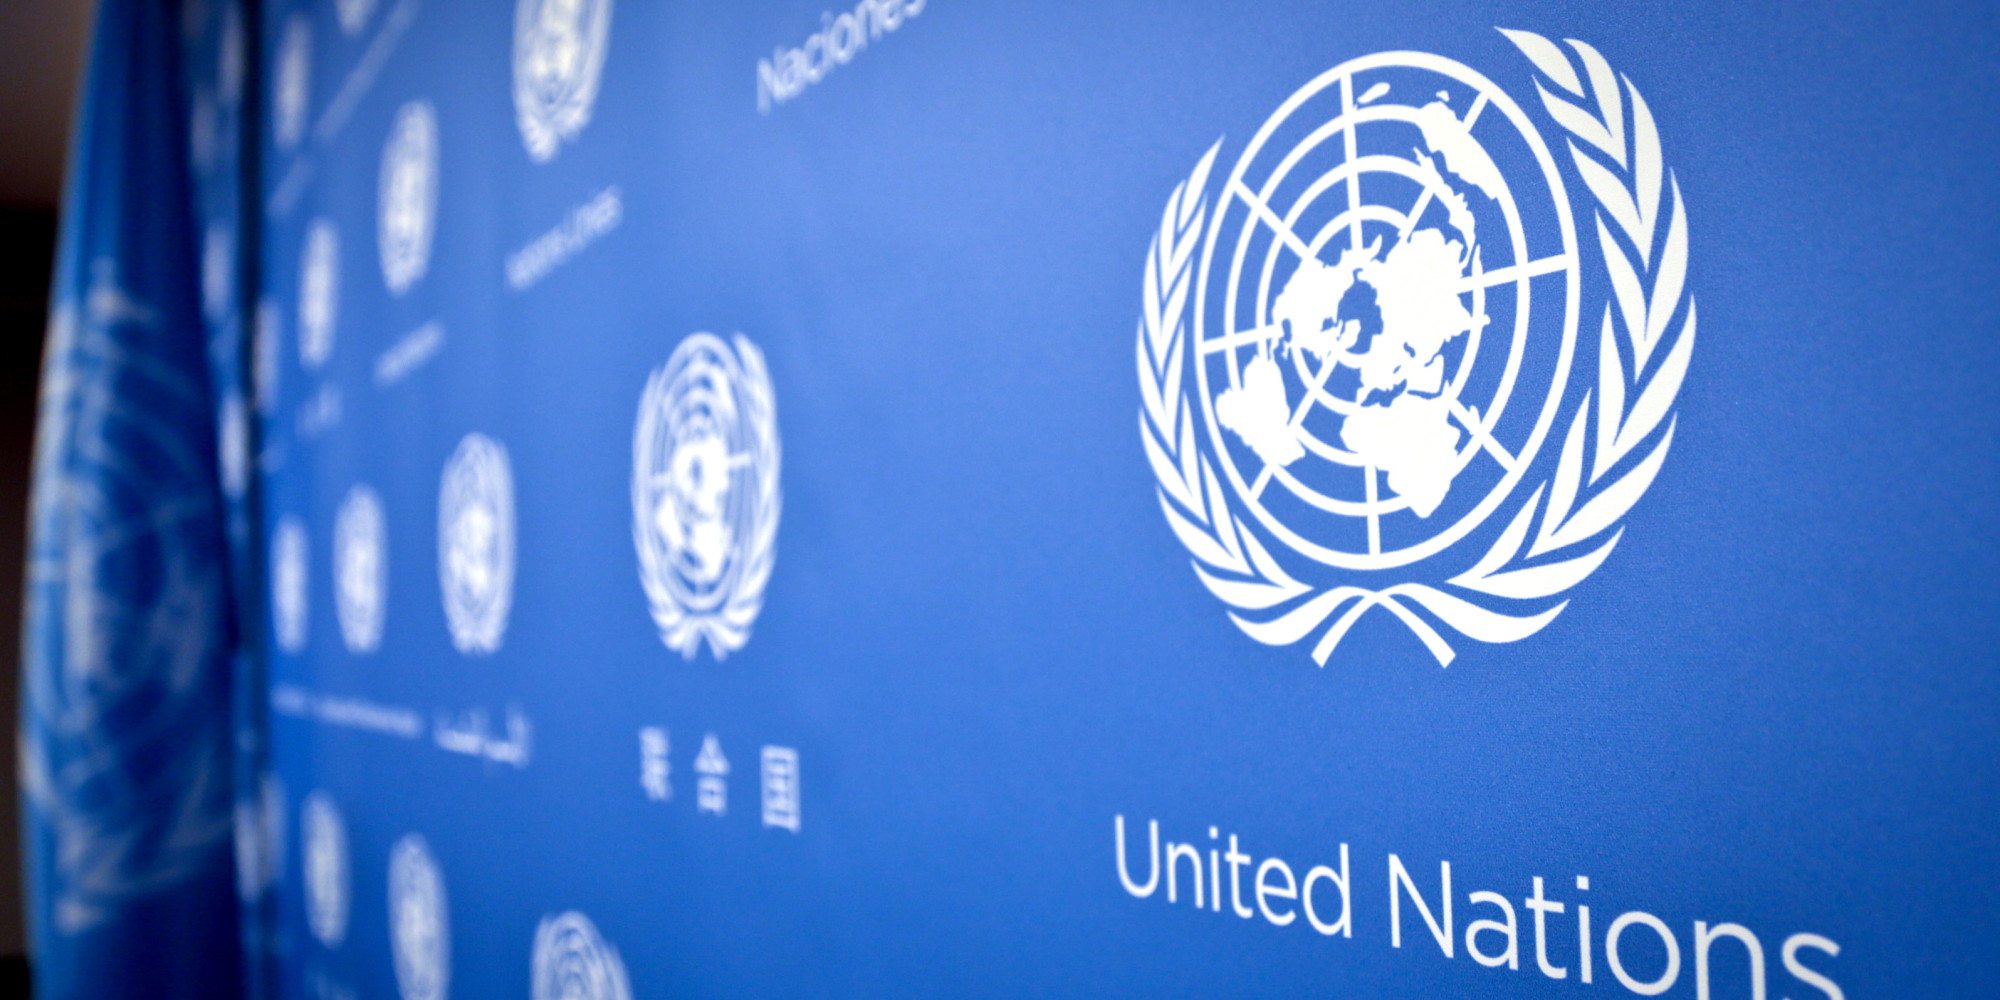  Έκκληση ΟΗΕ | Συγκεντρώστε επιπλέον 4,7 δισ.$ για την προστασία των πιο ευάλωτων χωρών